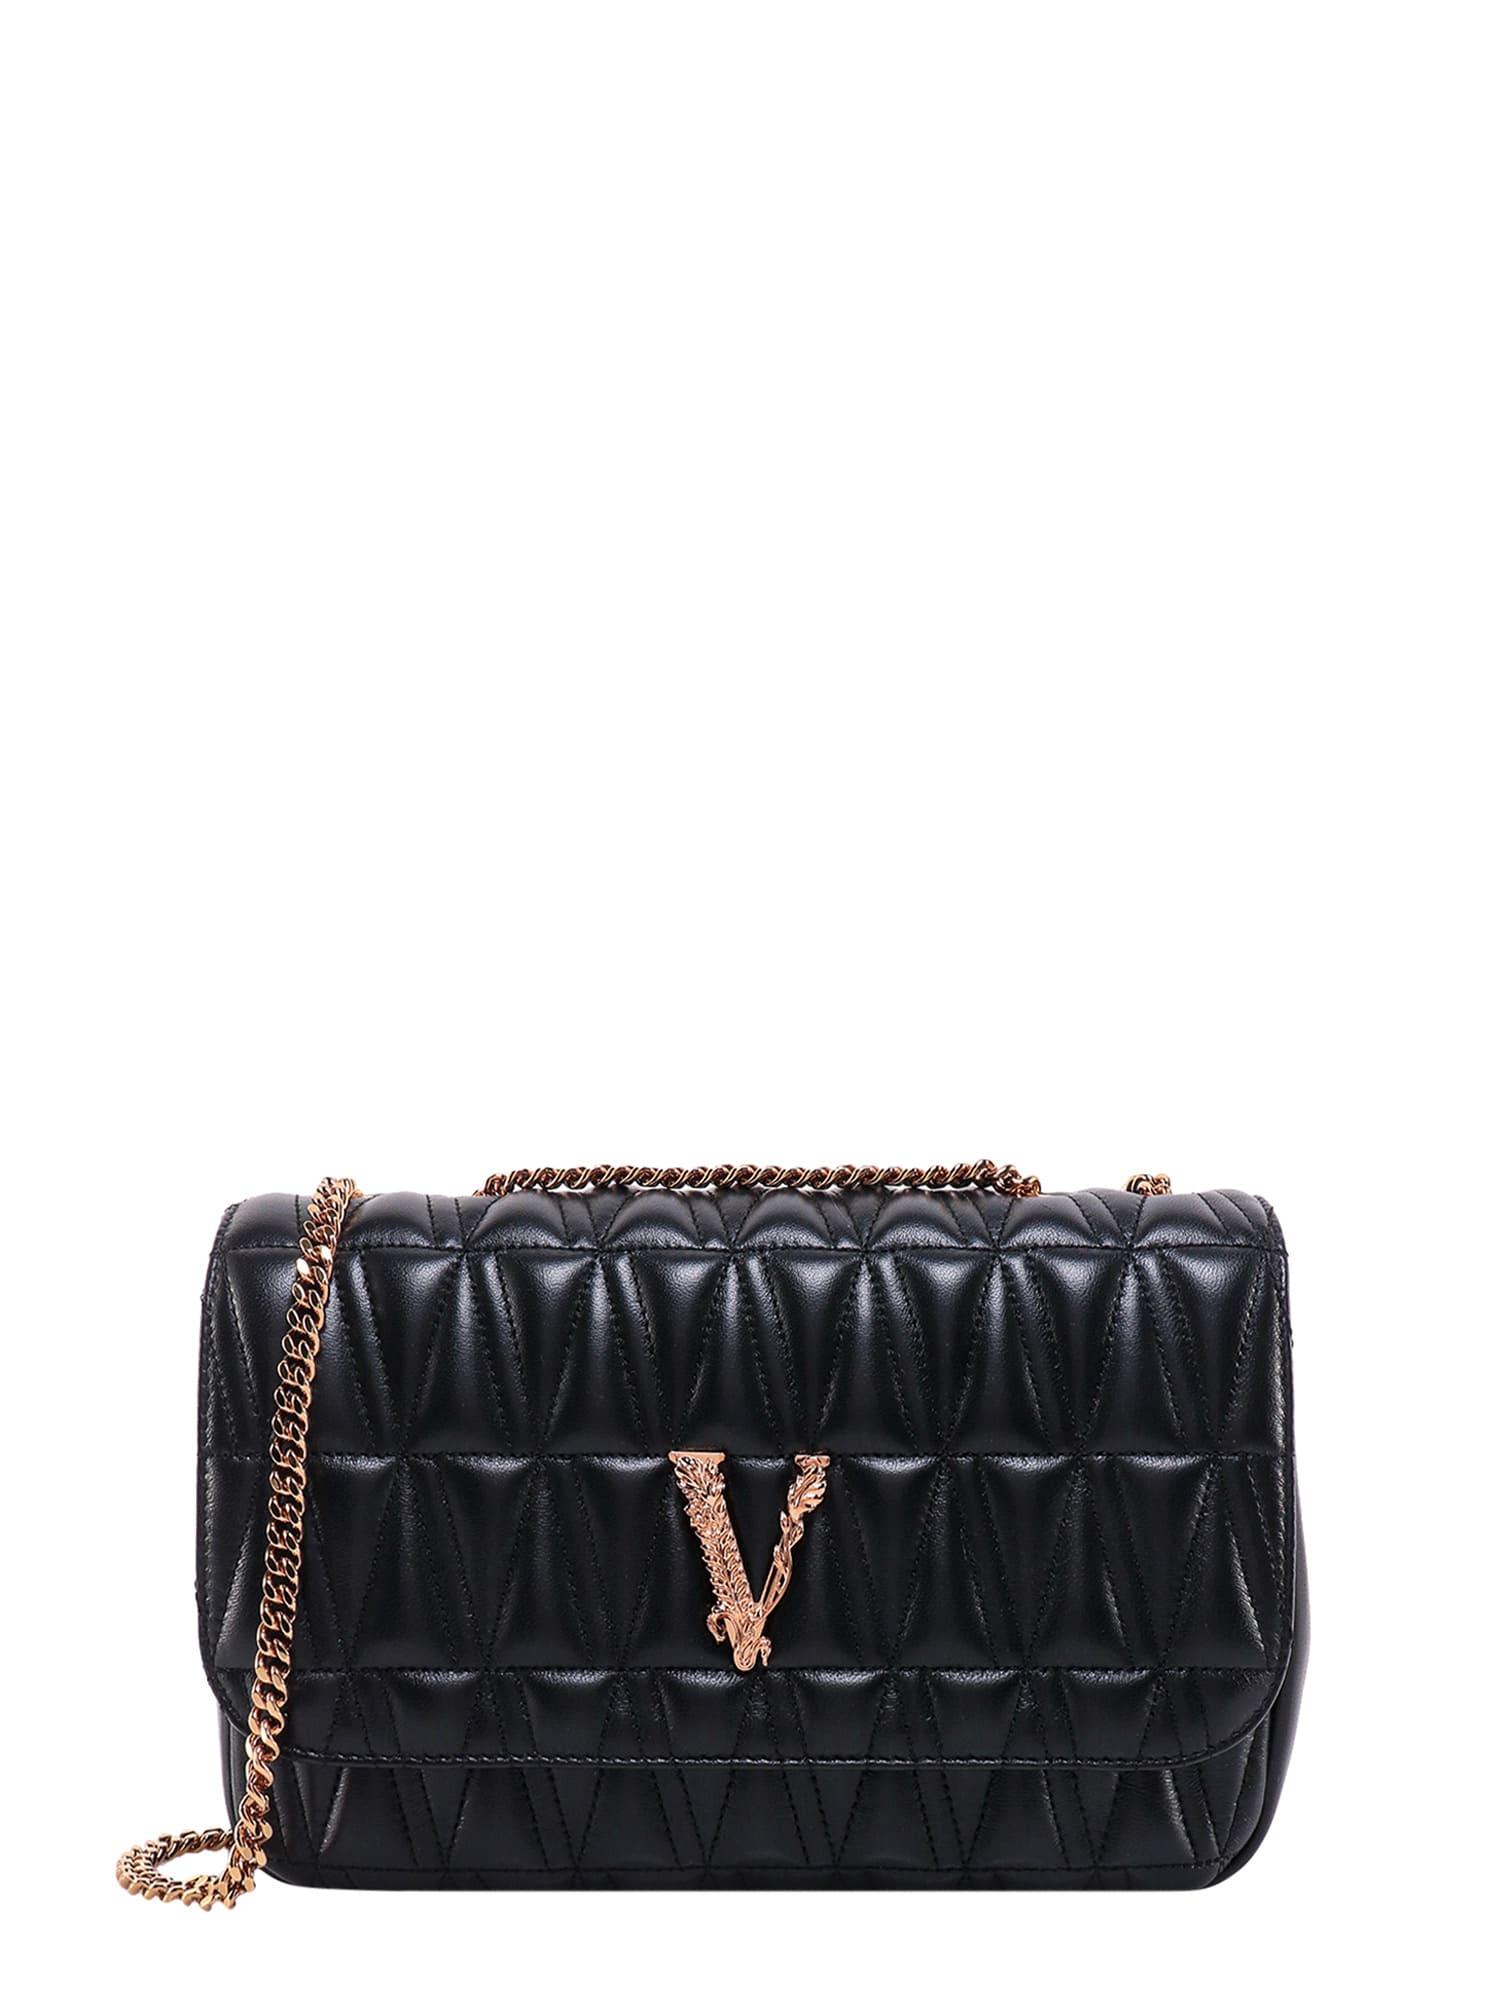 Versace Virtus in Black